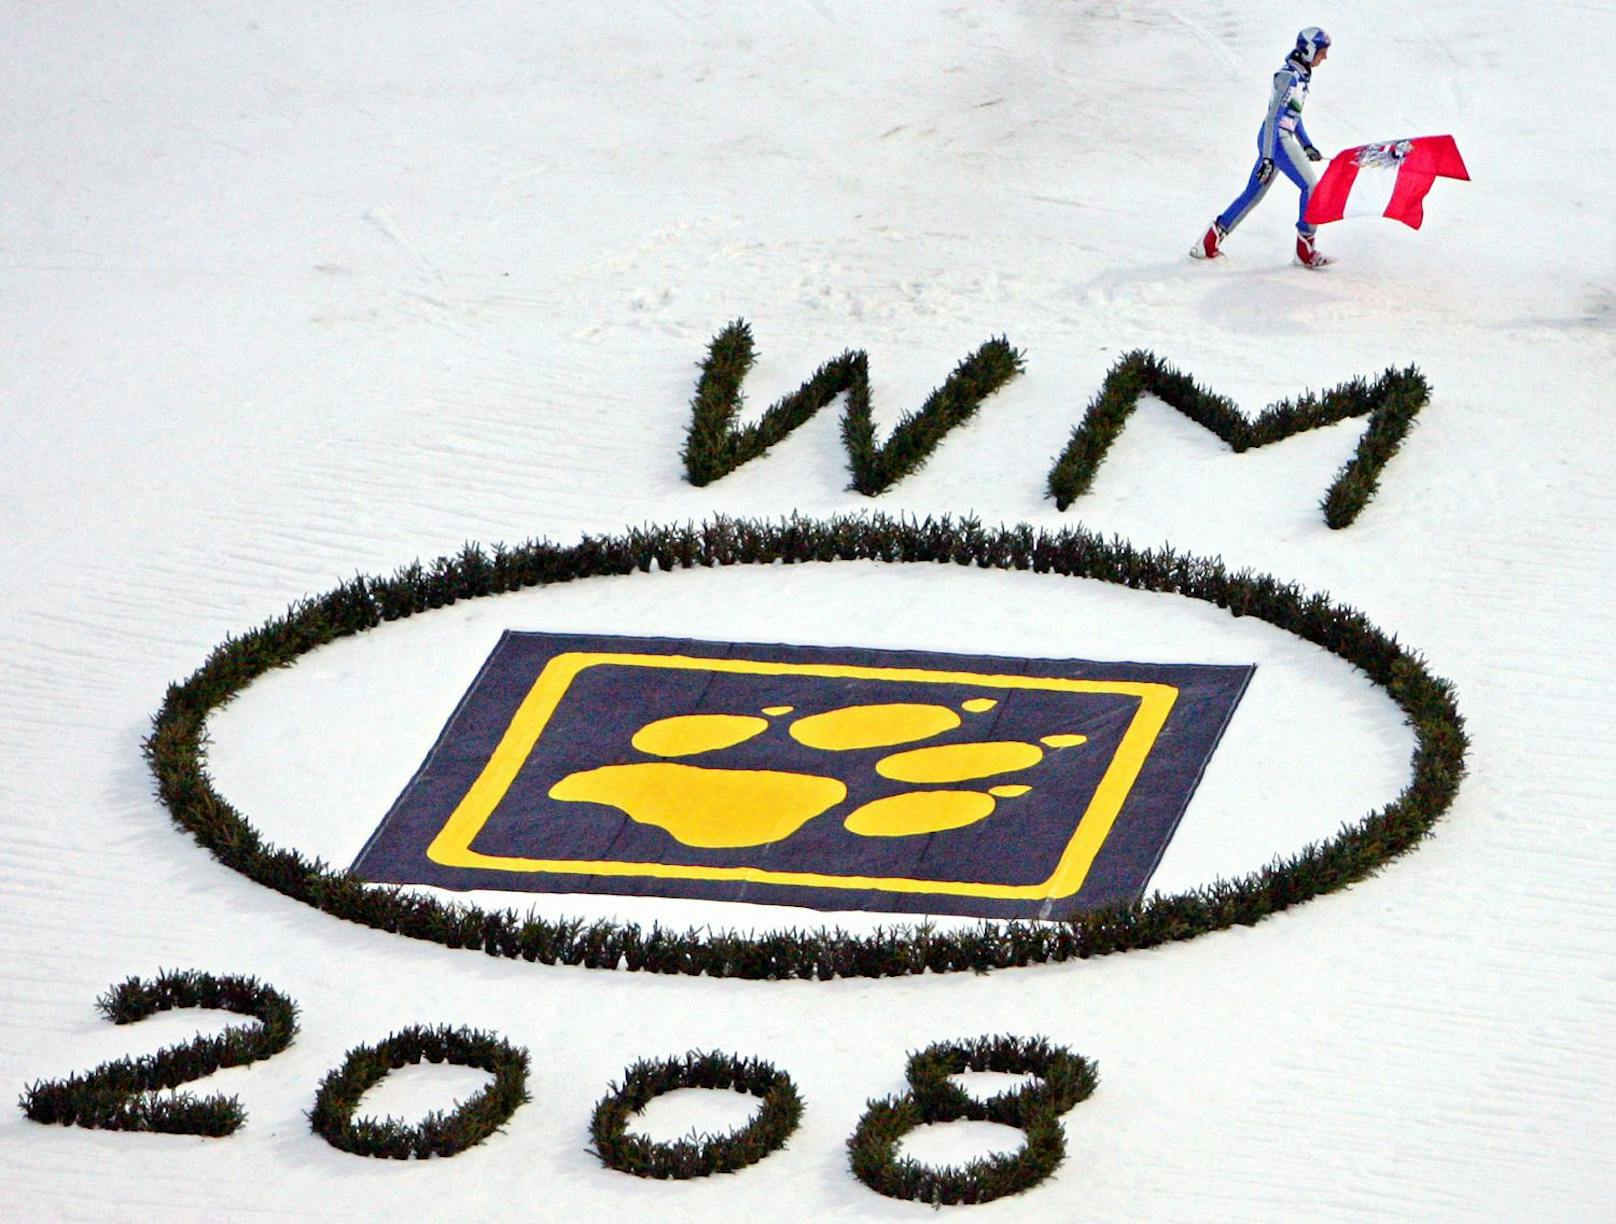 Bei der Skiflug-WM 2008 in Oberstdorf krönt sich der blutjunge Schlierenzauer sowohl im Einzel als auch im Team zum Weltmeister.